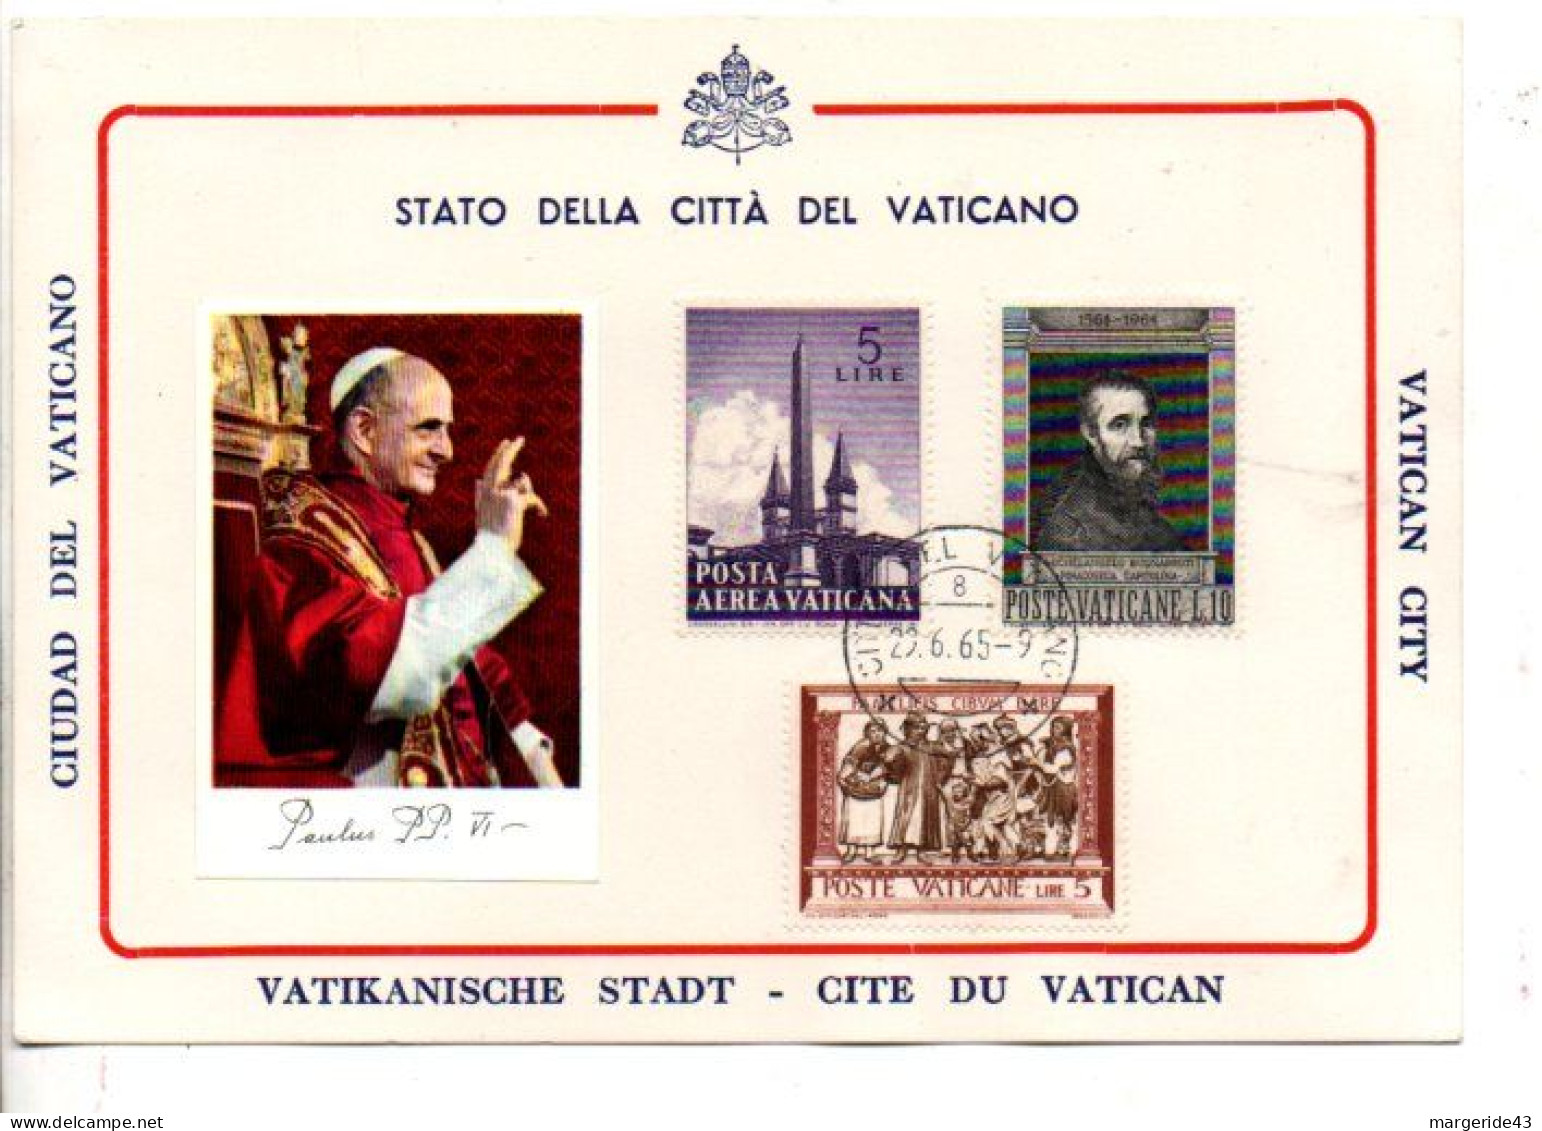 PLAQUETTES SOUVENIRS A L'ATTENTION DES TOURISTES 1964/5 - Used Stamps